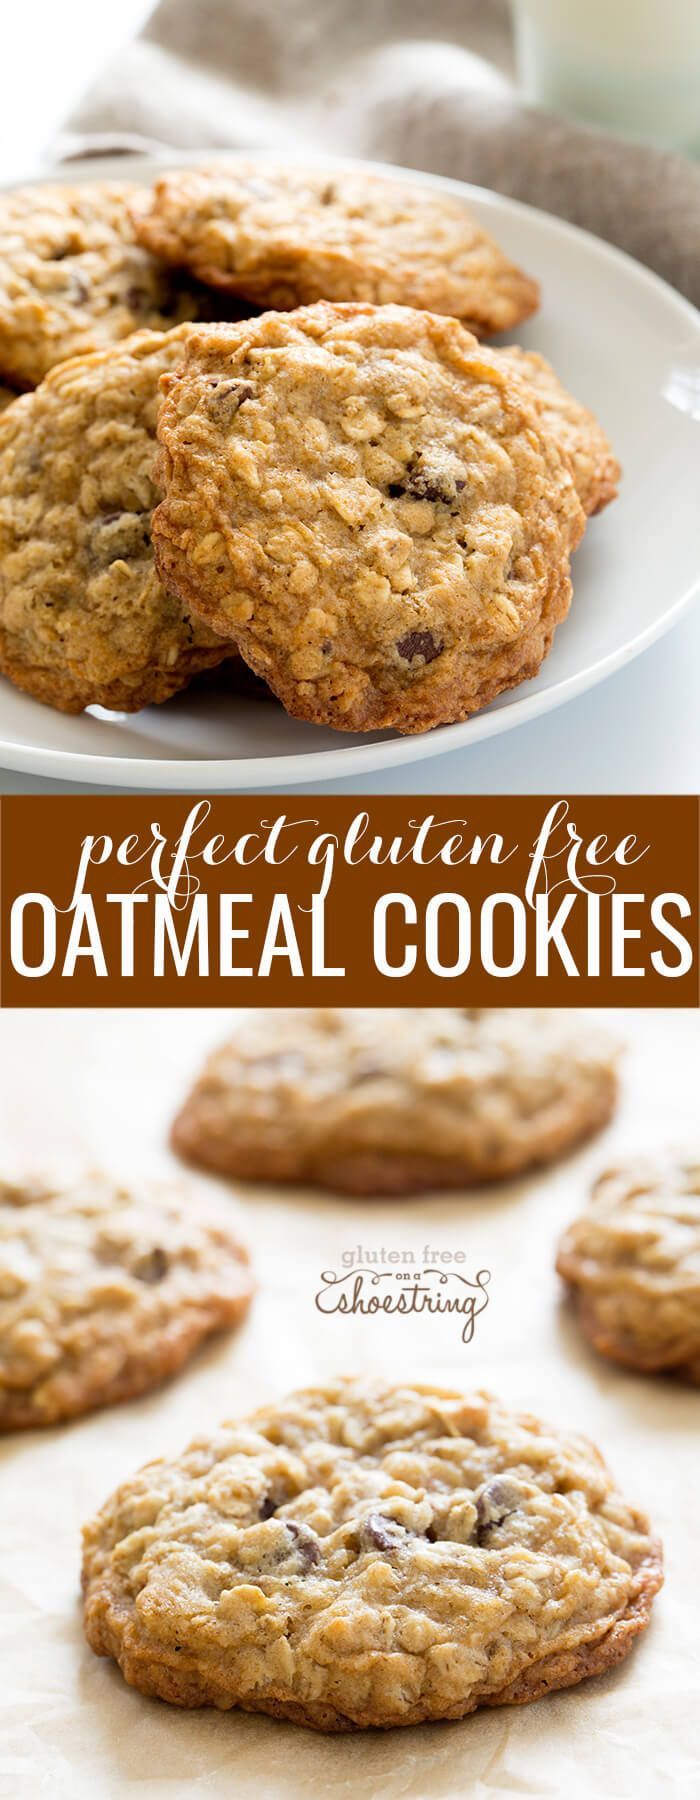 Gluten Free Oatmeal Cookies -   19 gluten free oatmeal
 ideas